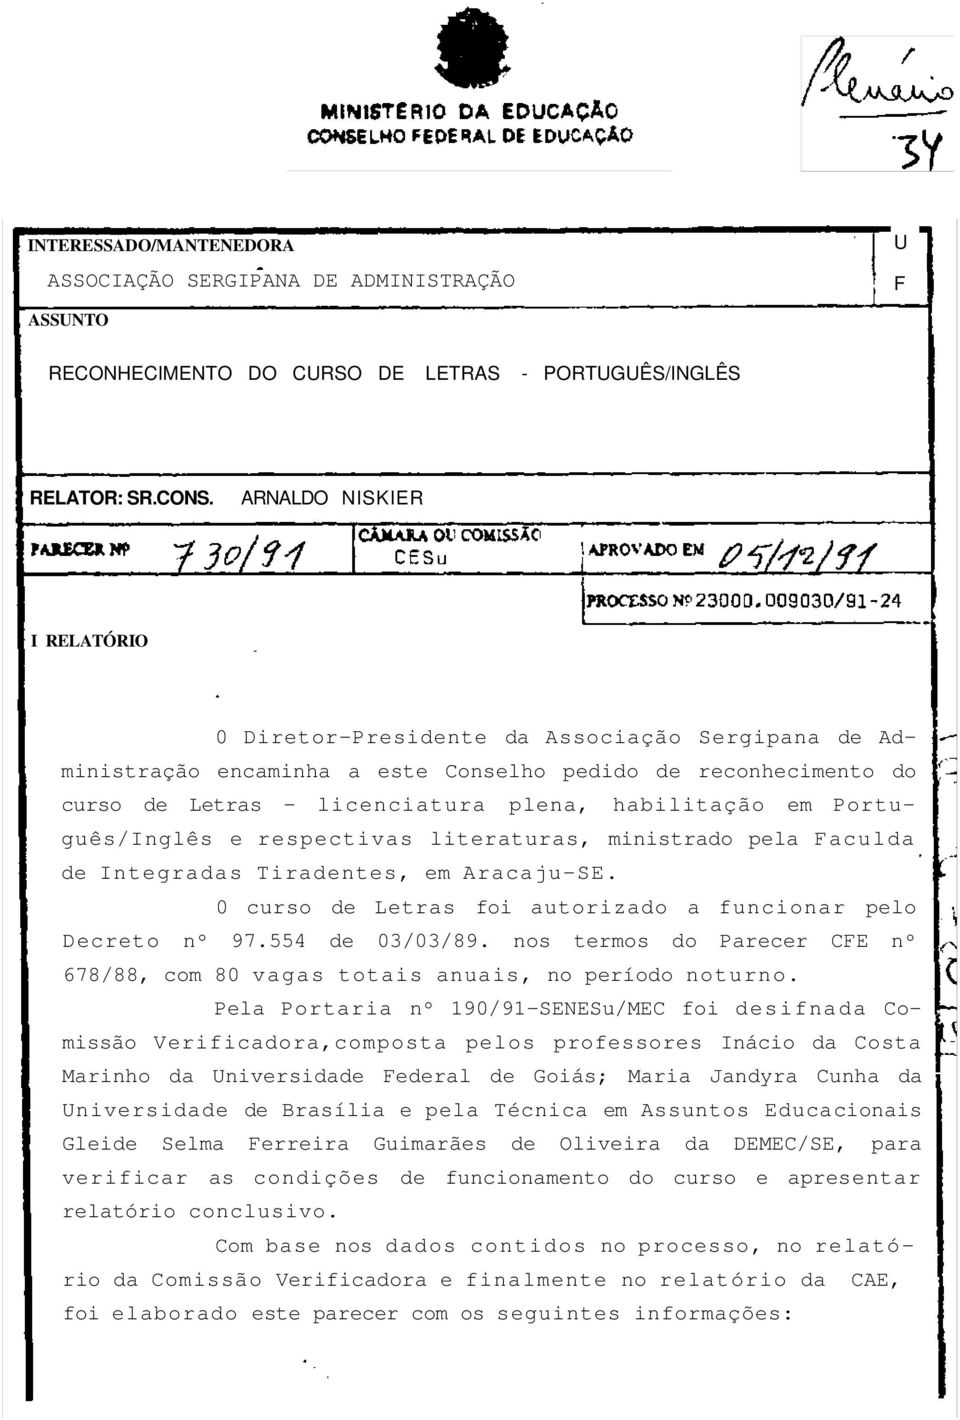 Português/Inglês e respectivas literaturas, ministrado pela Faculda de Integradas Tiradentes, em Aracaju-SE. 0 curso de Letras foi autorizado a funcionar pelo Decreto nº 97.554 de 03/03/89.